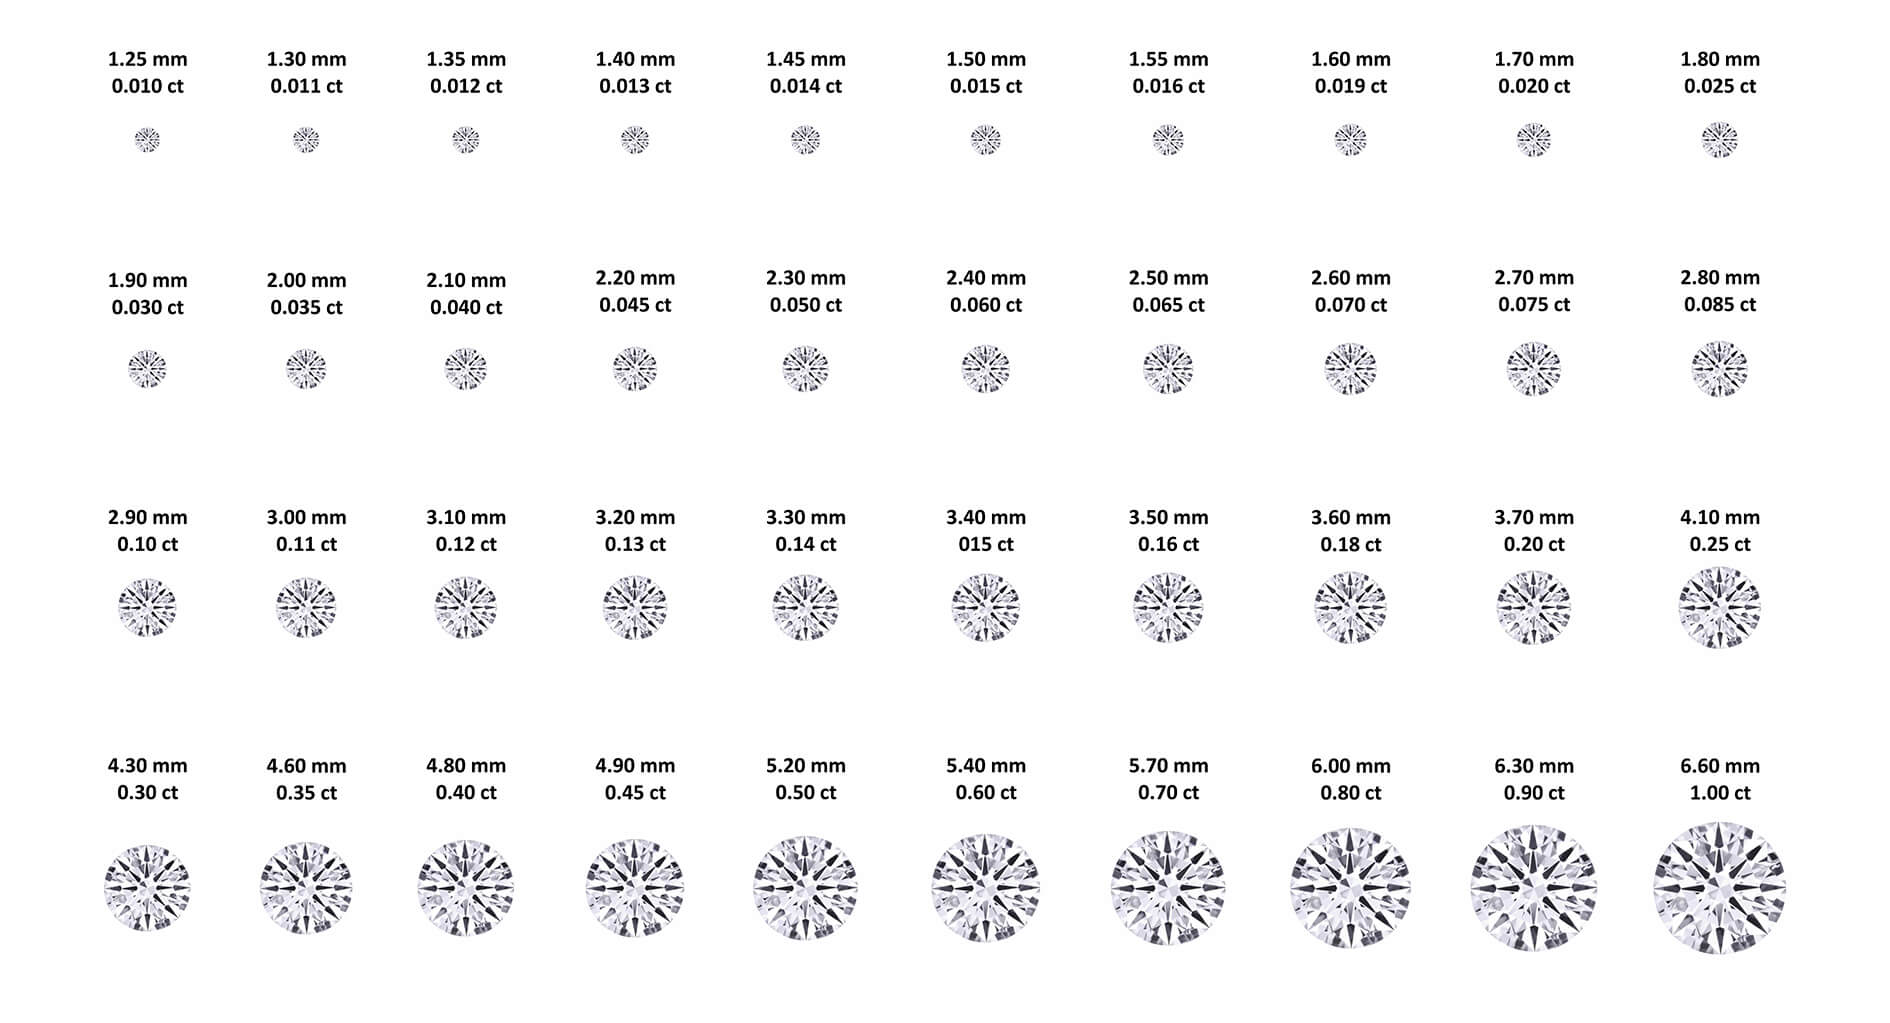 Round diamond size chart. Round diamond millimetre sizes